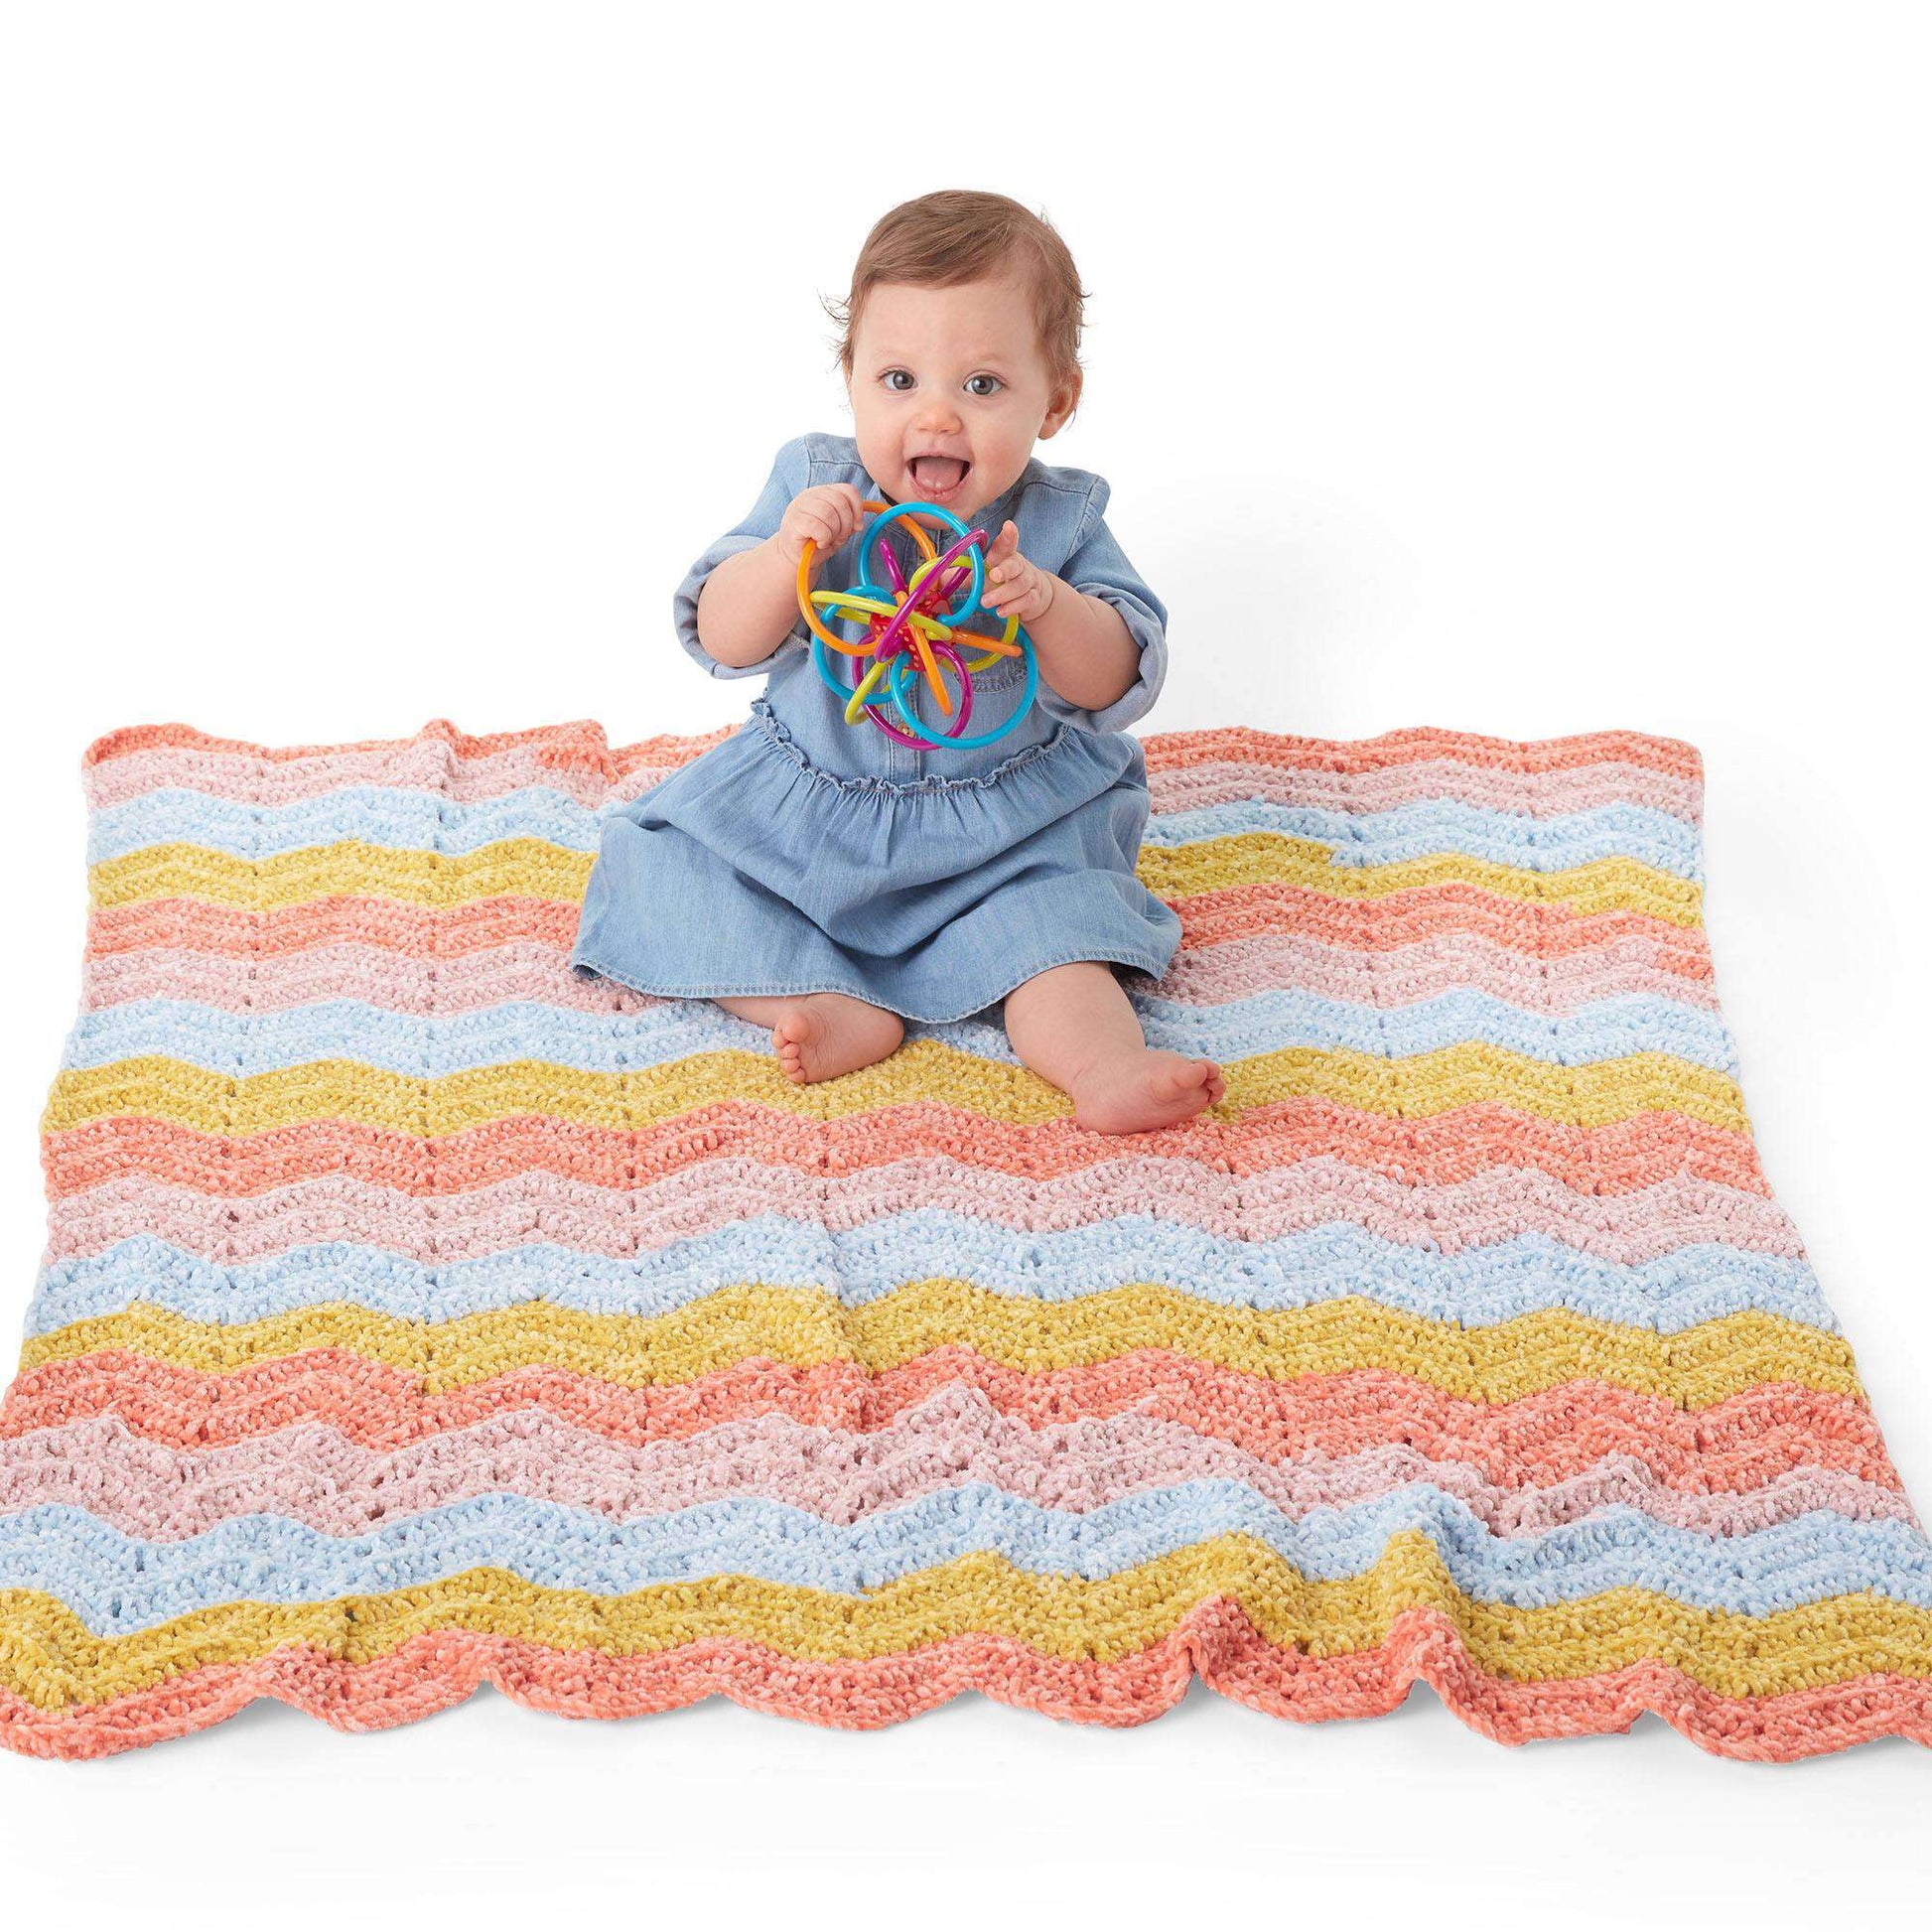 Free Bernat Zig And Zag Crochet Baby Blanket Pattern